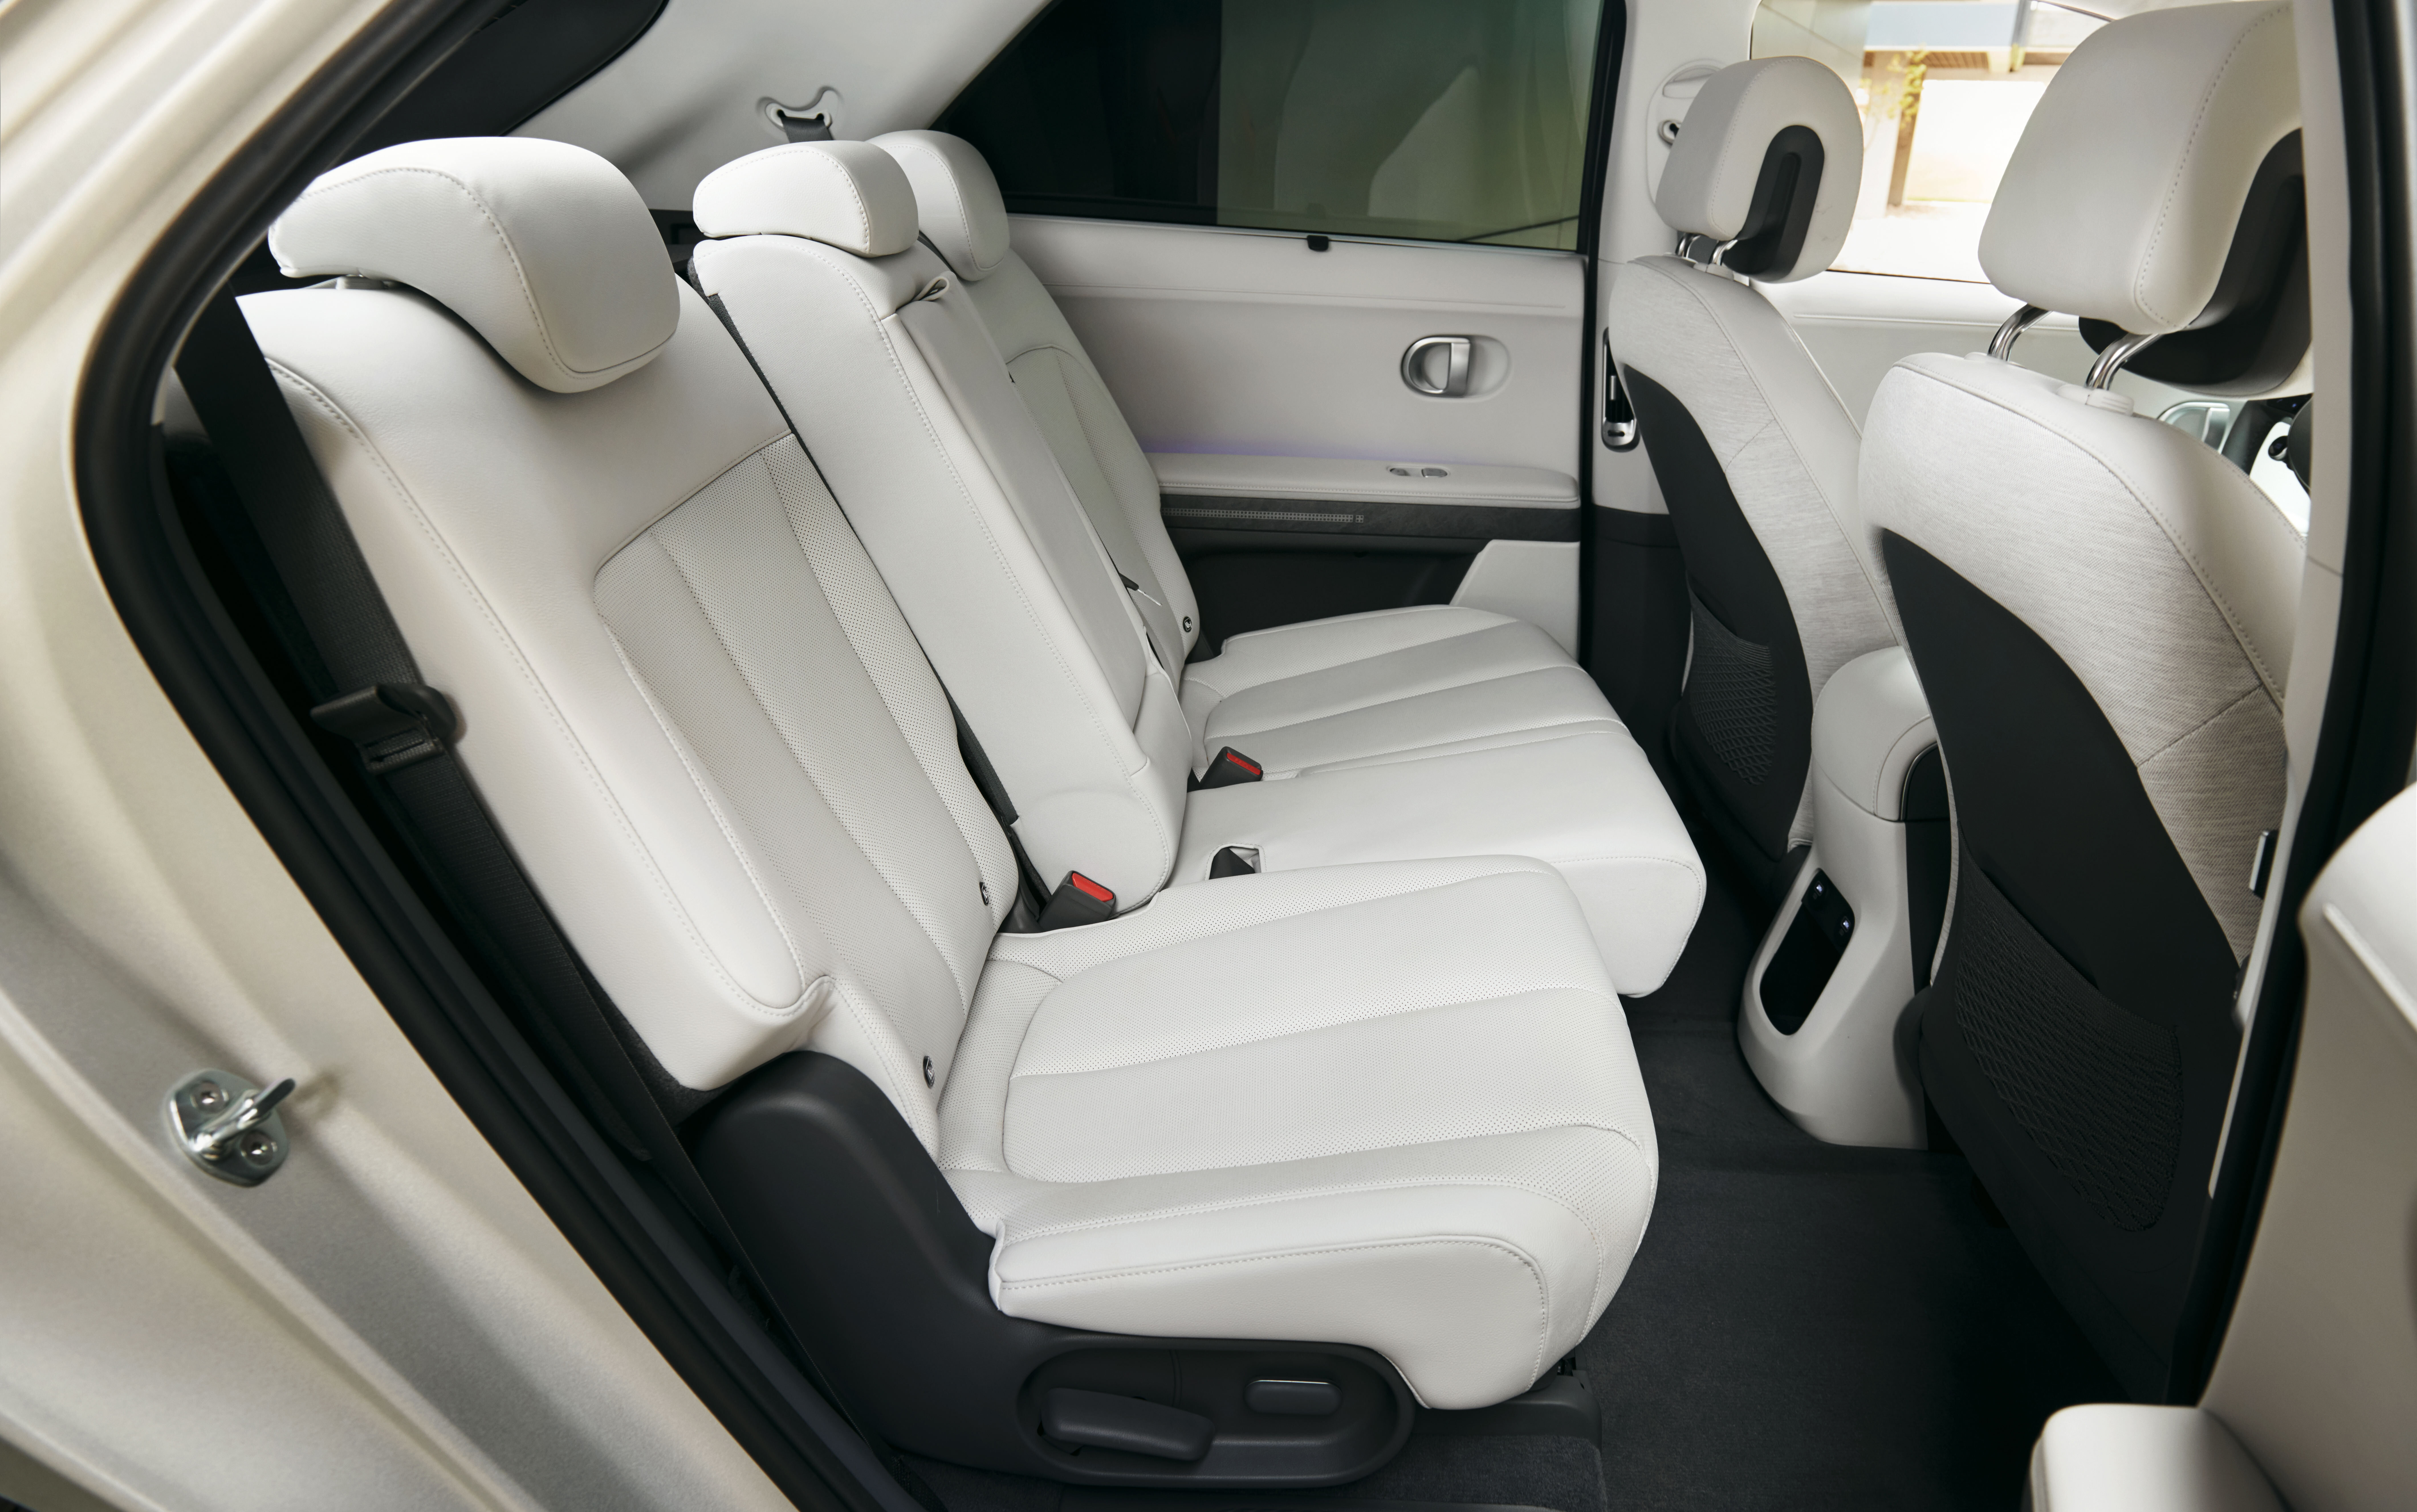 2023 Hyundai Ioniq 5 Q3 2023 Sales Interior Image 4